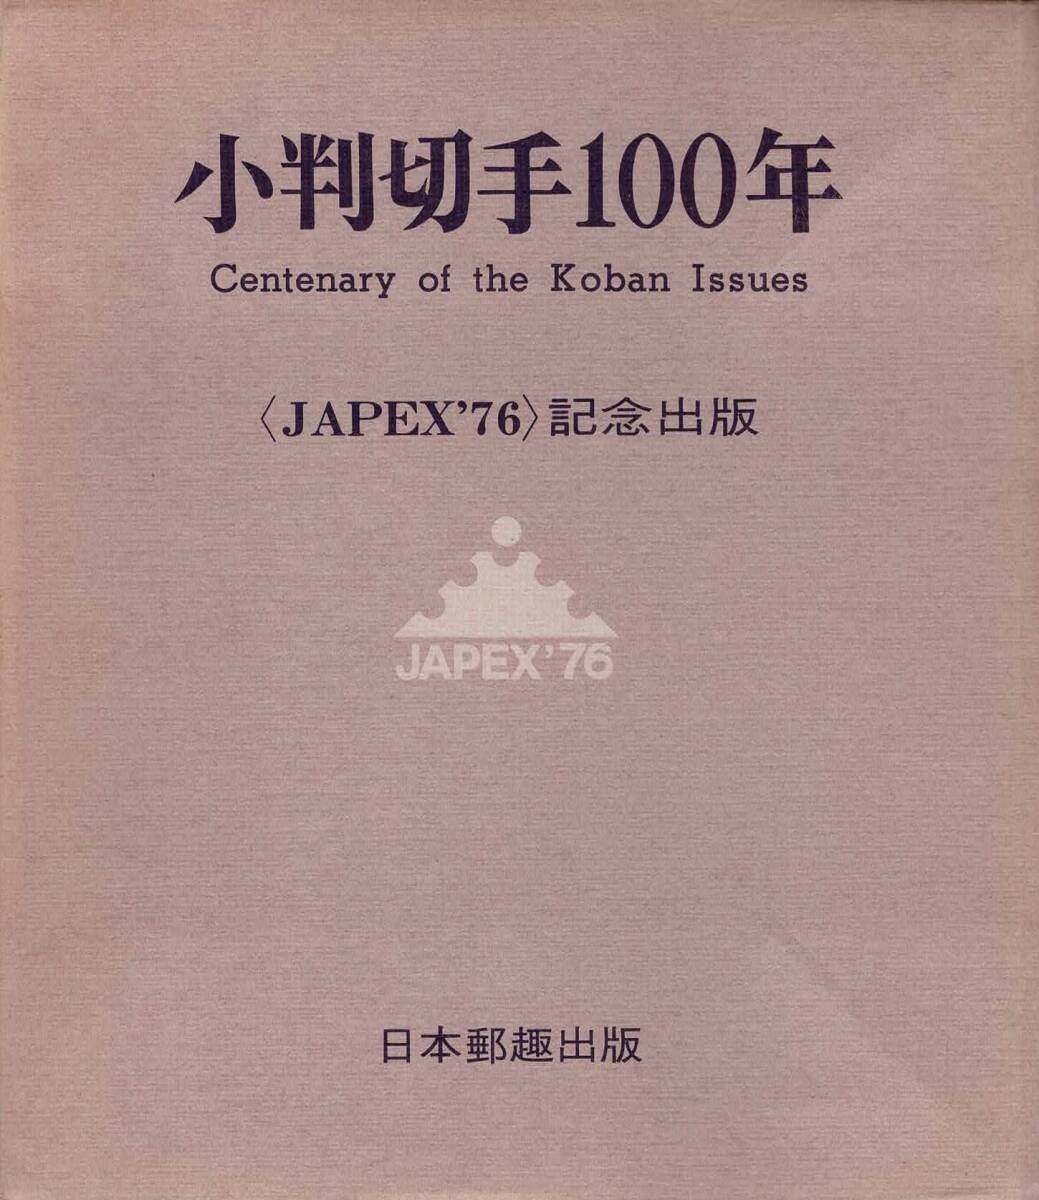  марка koban 100 год Centenary of the Koban Issue (JAPEX\'76) память выпускать 